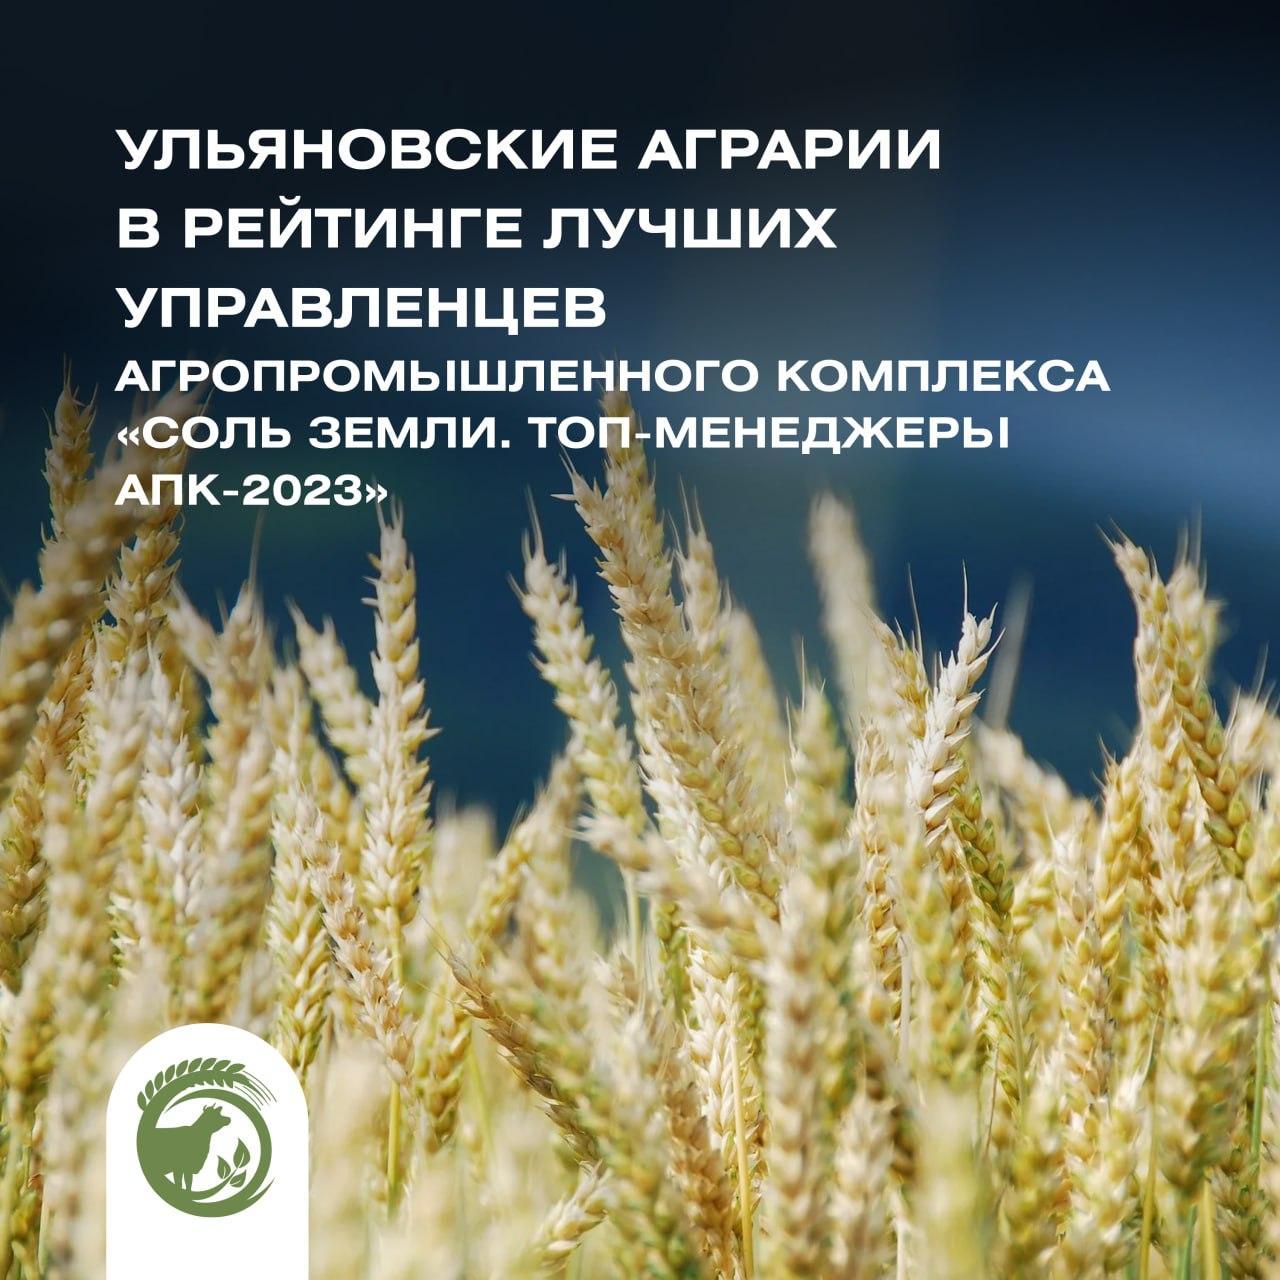 Ульяновские аграрии — в рейтинге лучших управленцев агропромышленного комплекса «Соль земли. Топ-менеджеры АПК-2023».